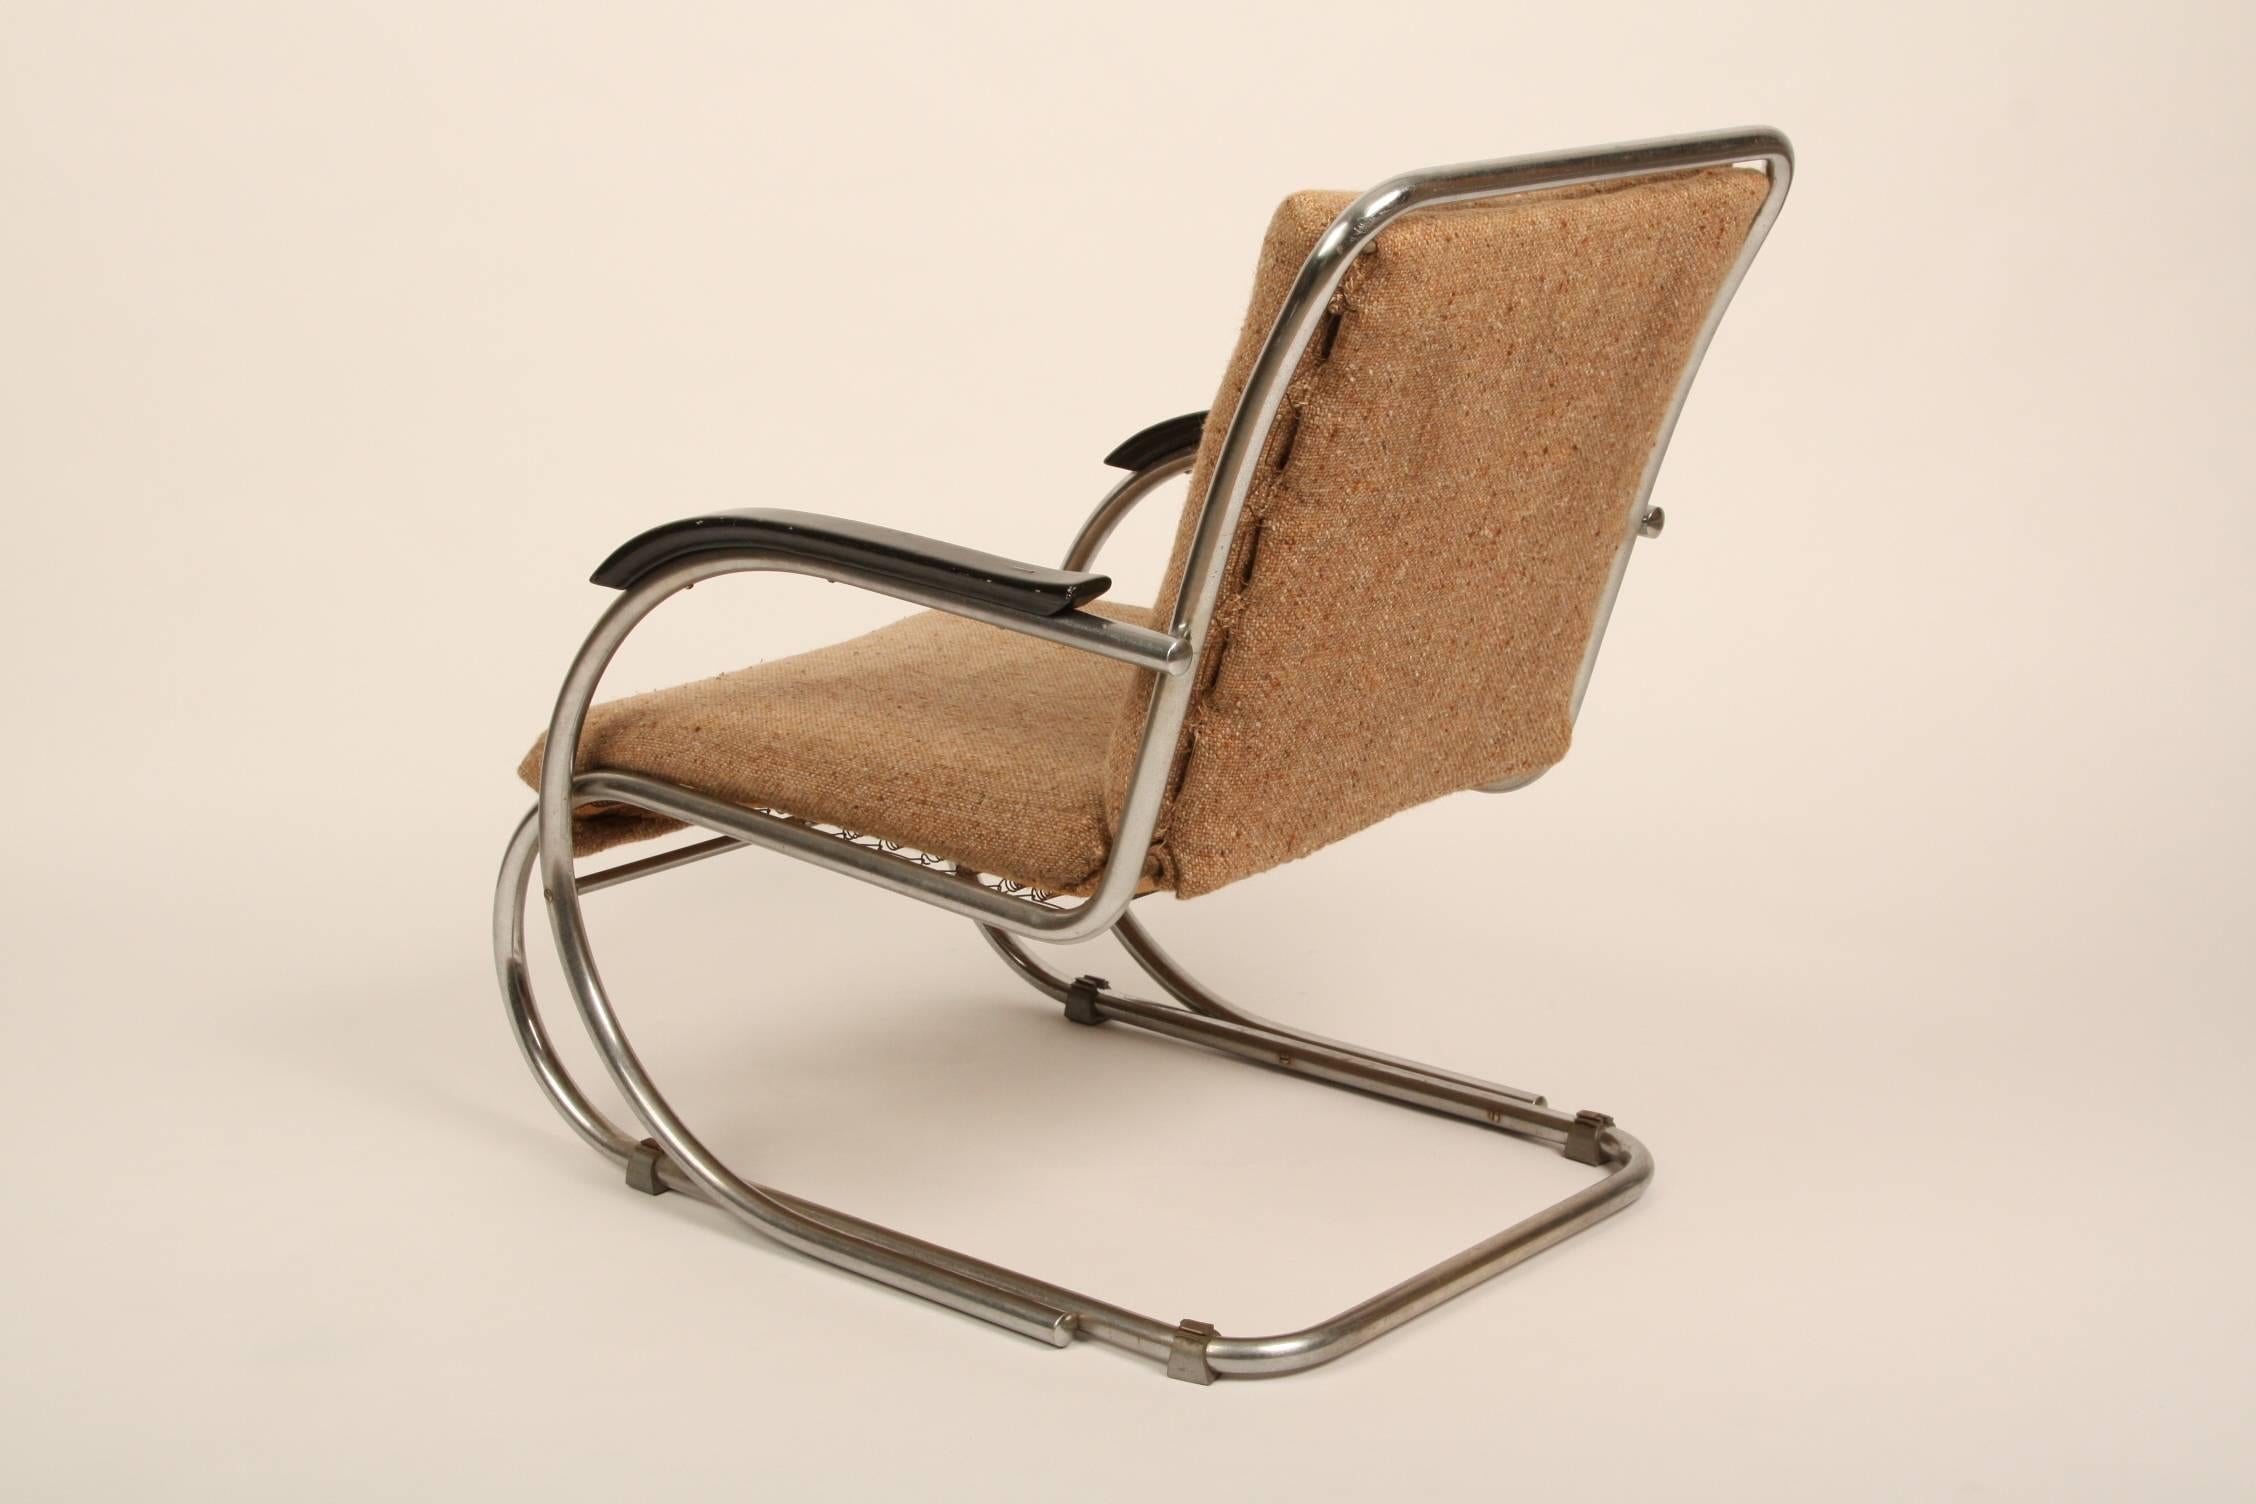 Bauhaus Paul Schuitema Tube Chair D3 from 1934 Gispen Area